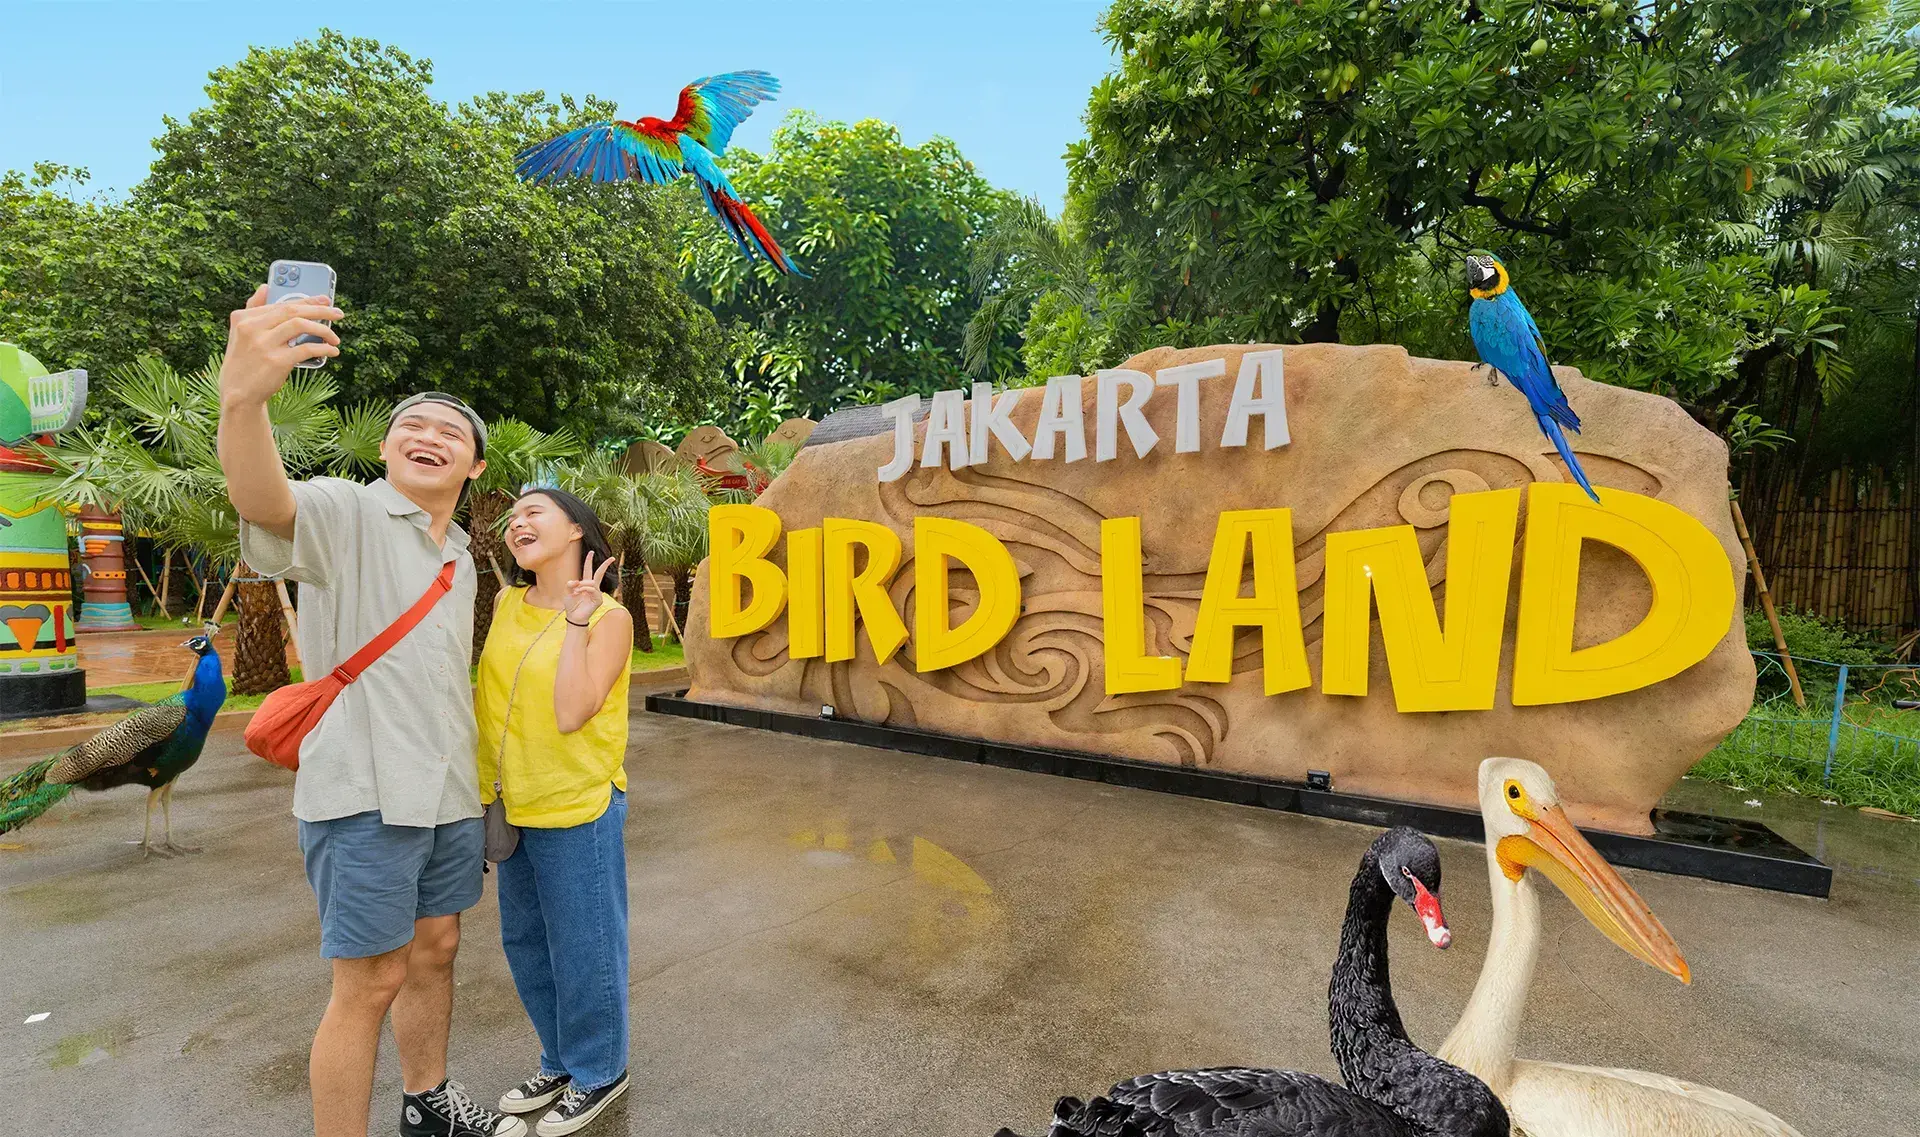 Jakarta Bird Land